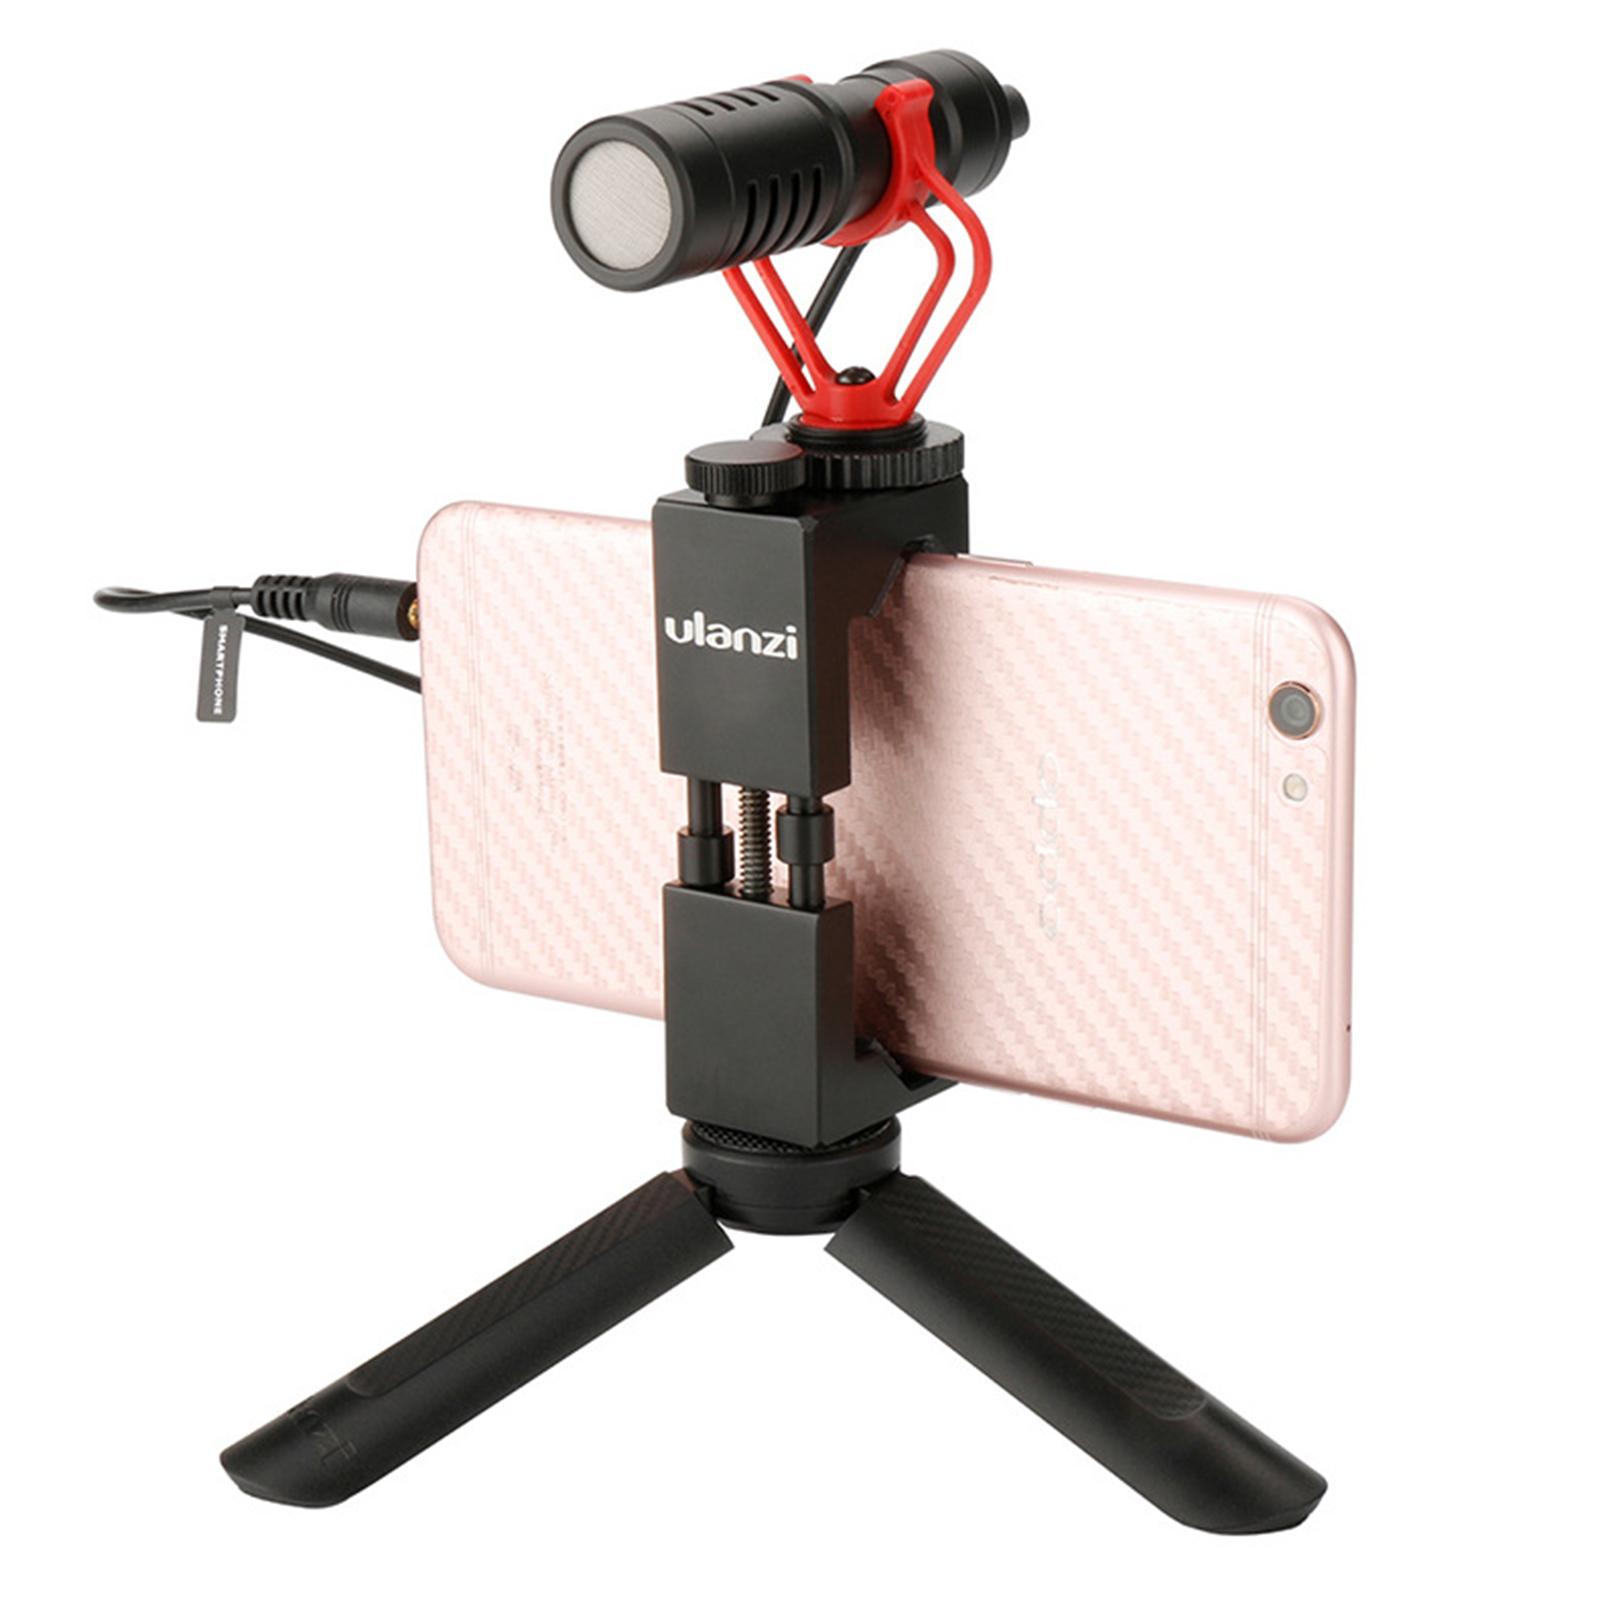 Ulanzi Mini Statief Voor Selfie Stok Stabilisator Op Mobiel Dslr Camera 'S, draagbare Stand Voor Zhiyun/Feiyu/Dji Osmo